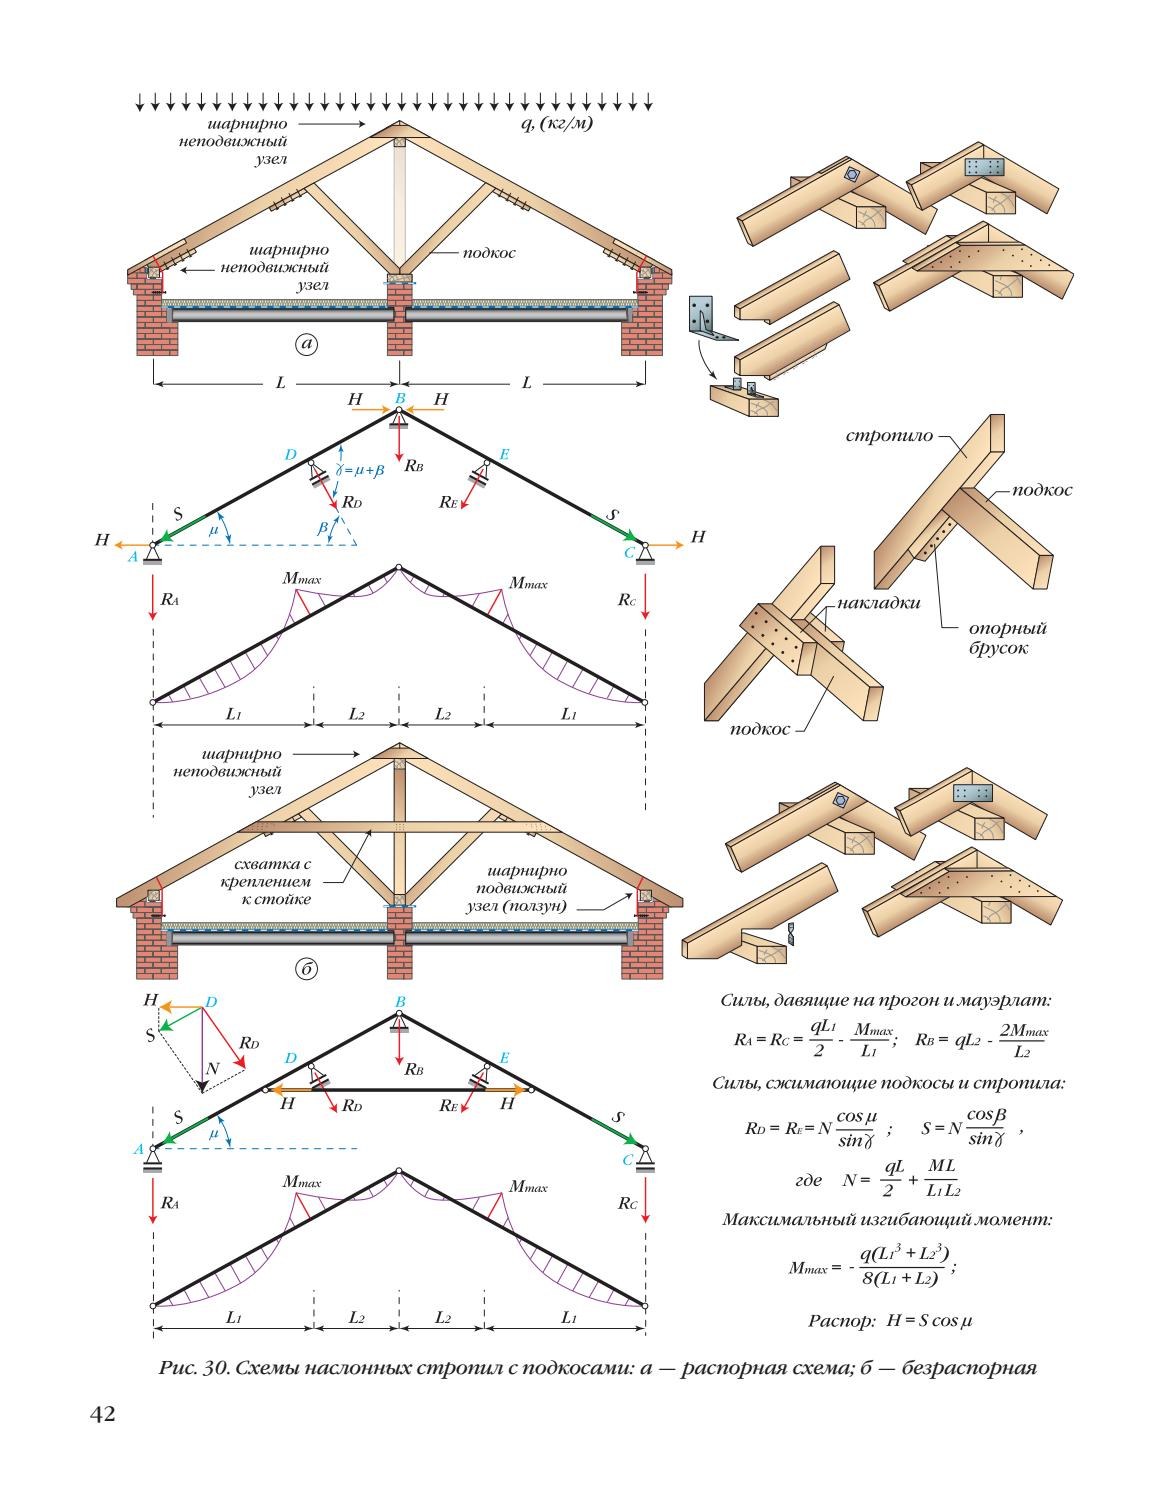 Схема устройства стропильной системы двухскатной крыши